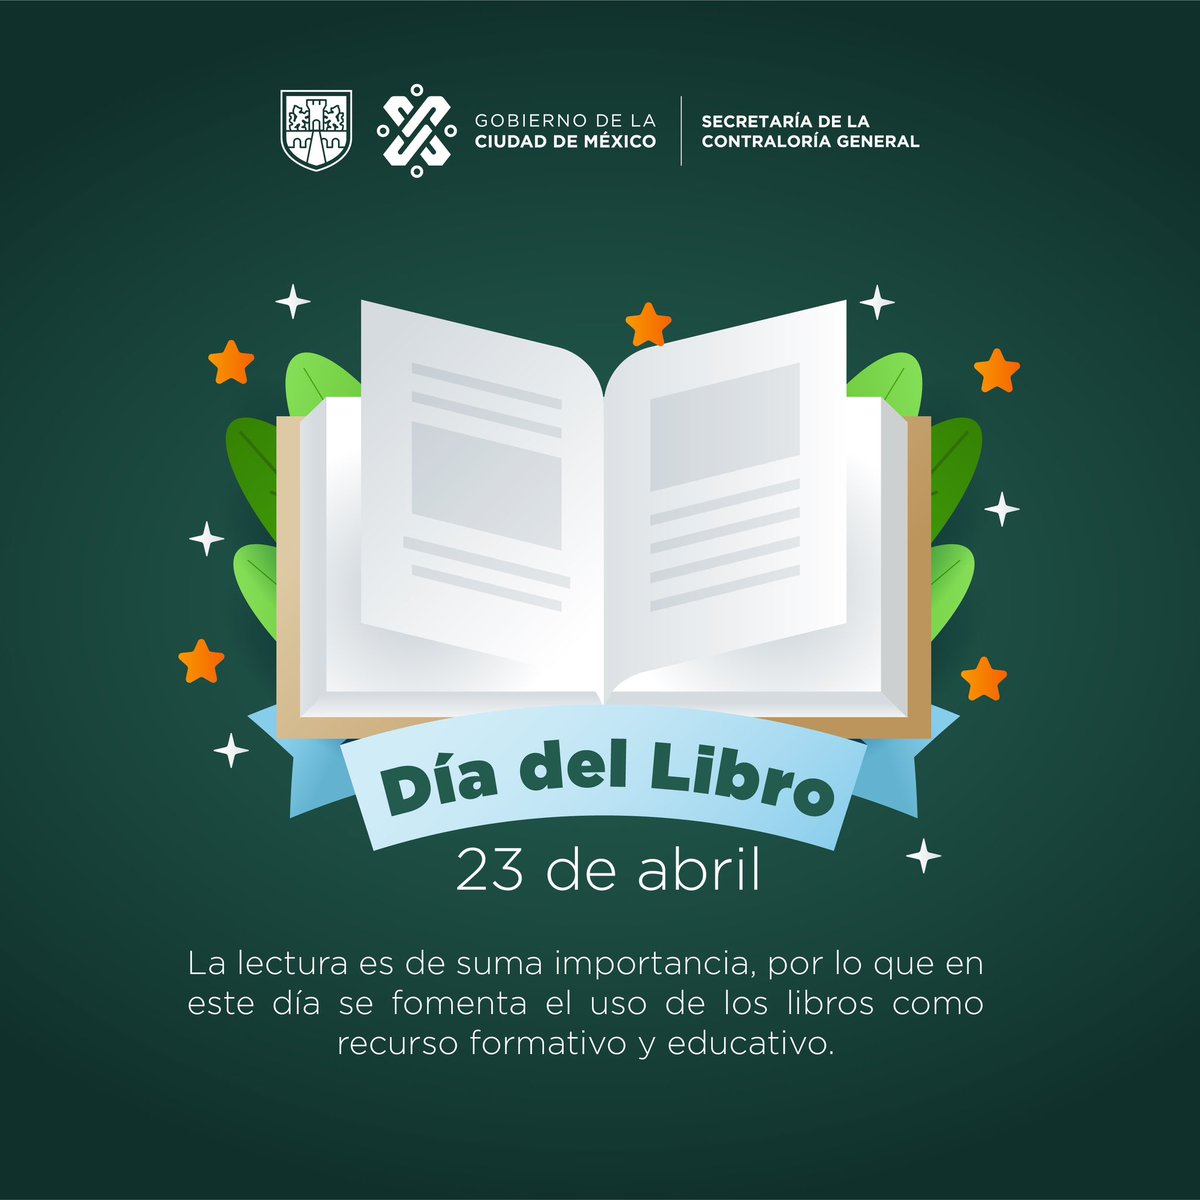 Porque un libro es la puerta al conocimiento, la cultura y la imaginación, hoy celebramos el #DiaInternacionalDelLibro 📚